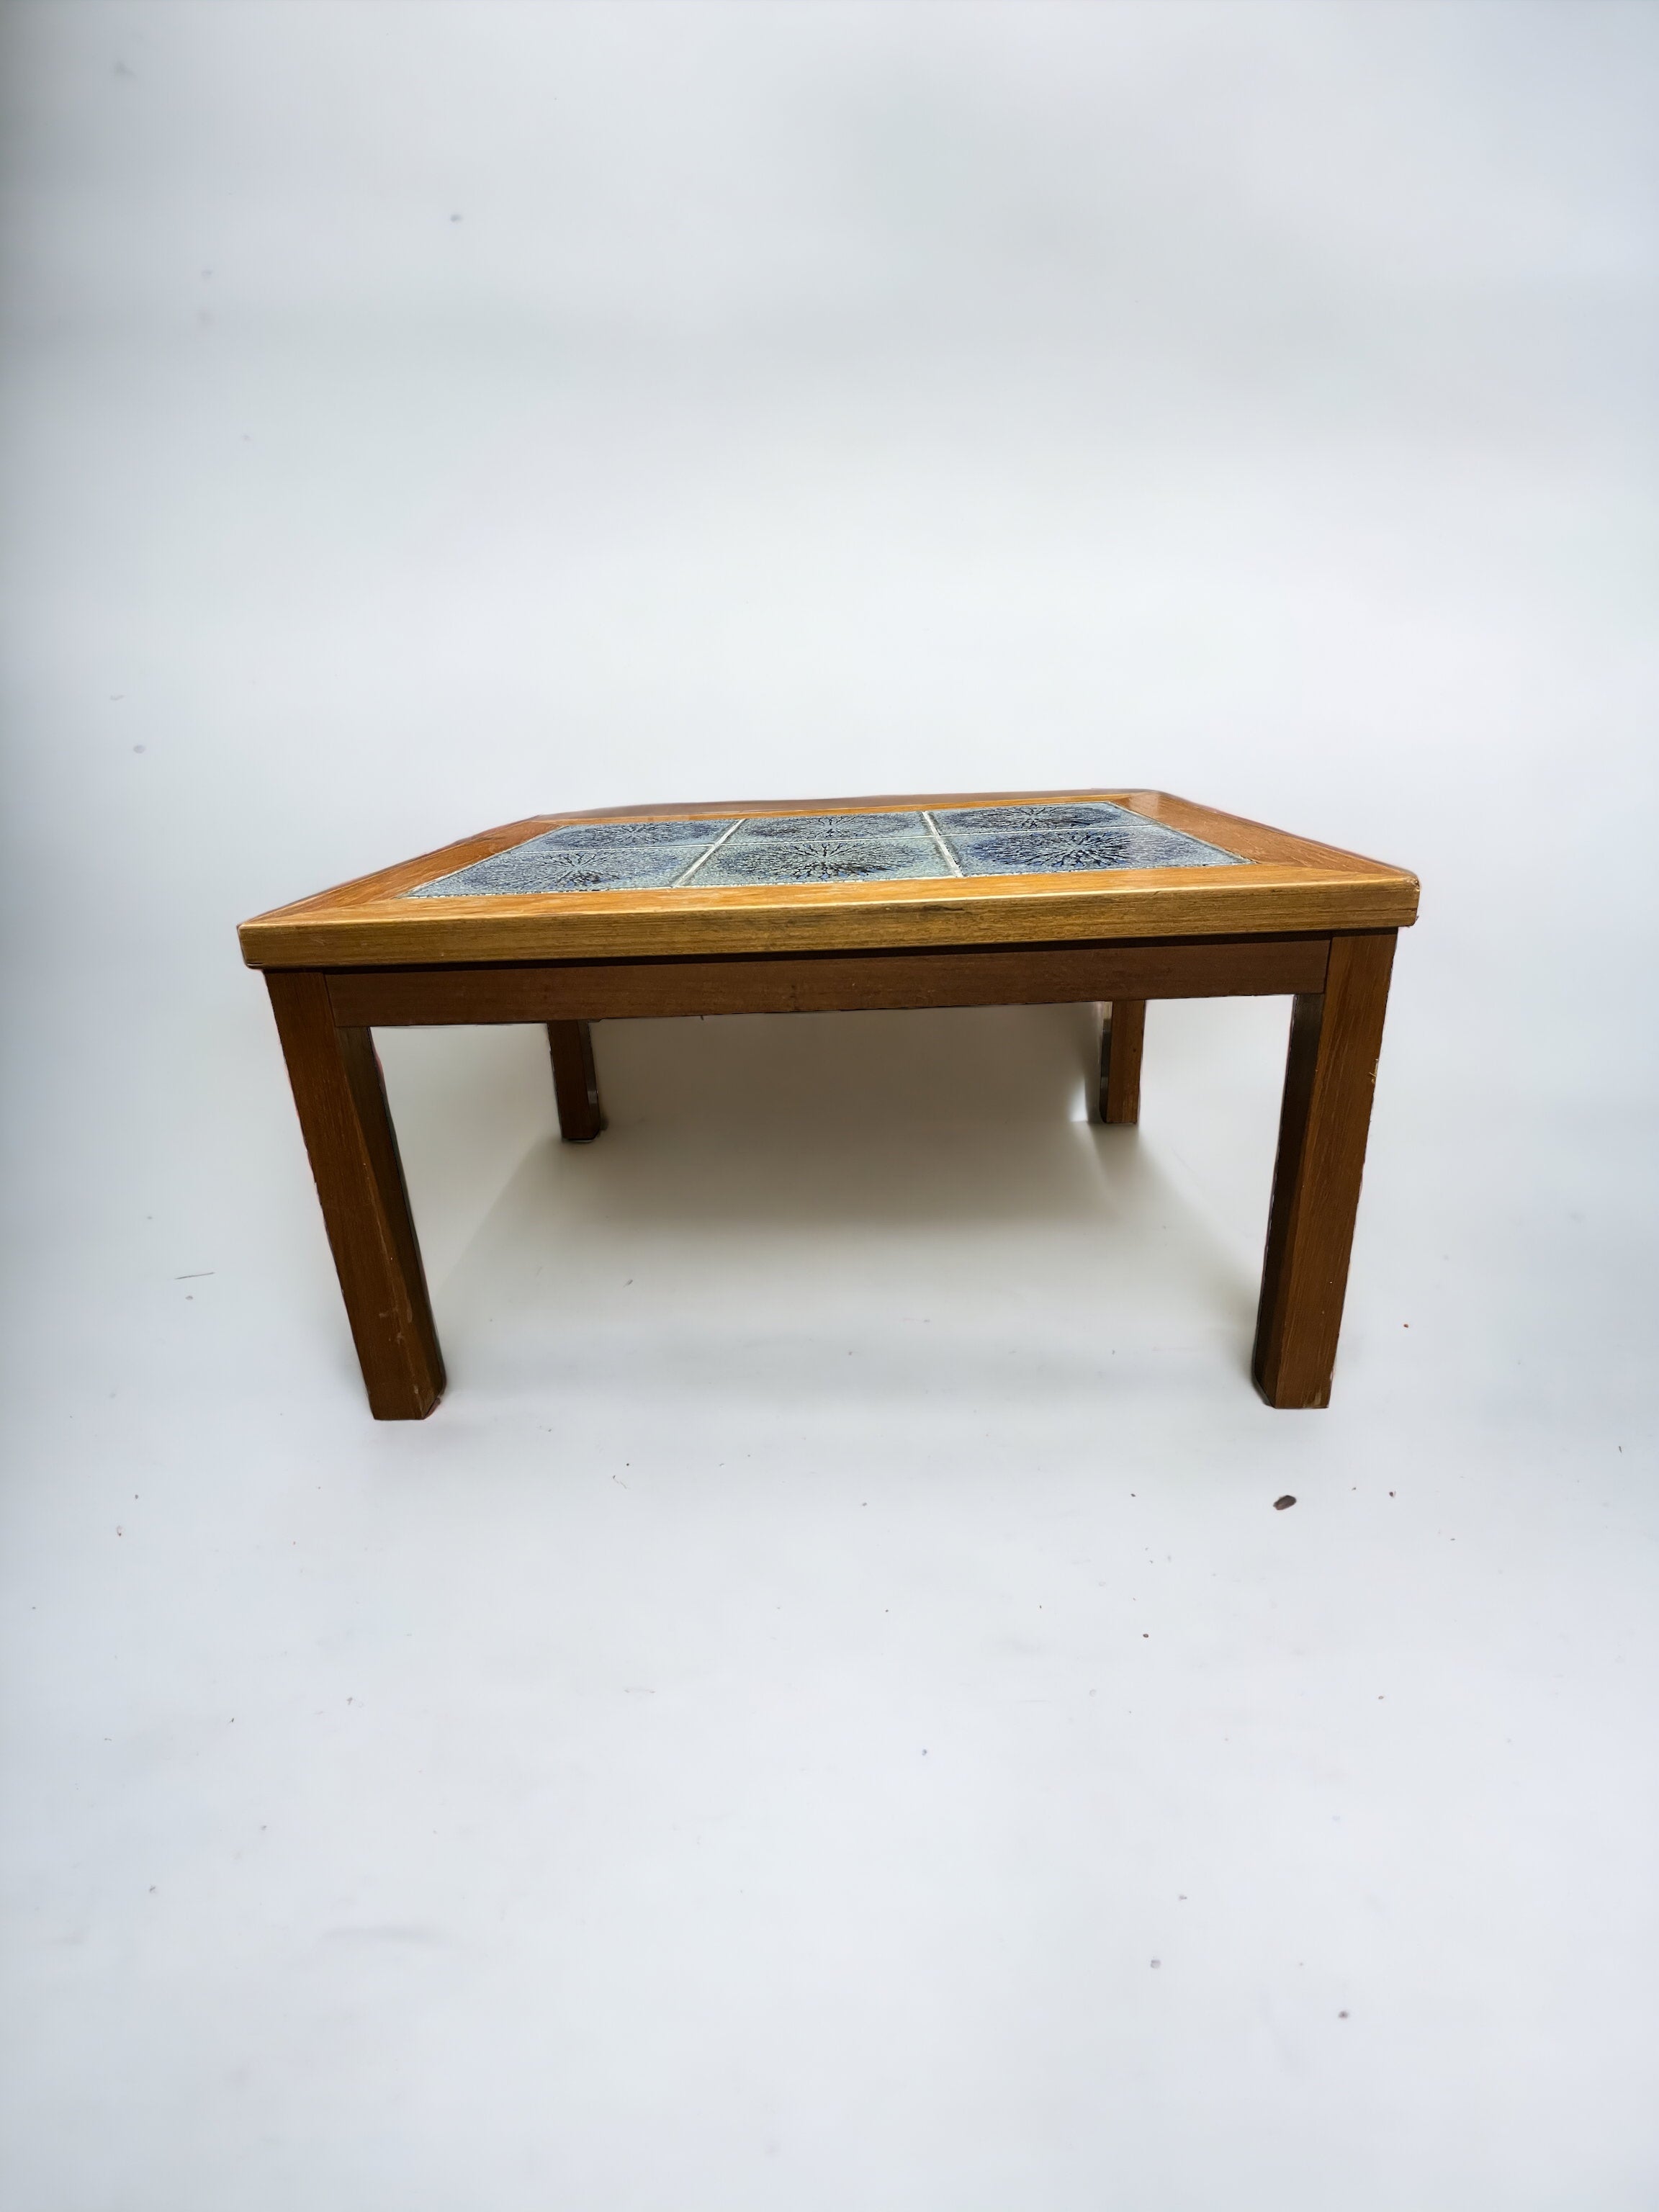 Teal Tile/Wooden Side Table (SOLD)